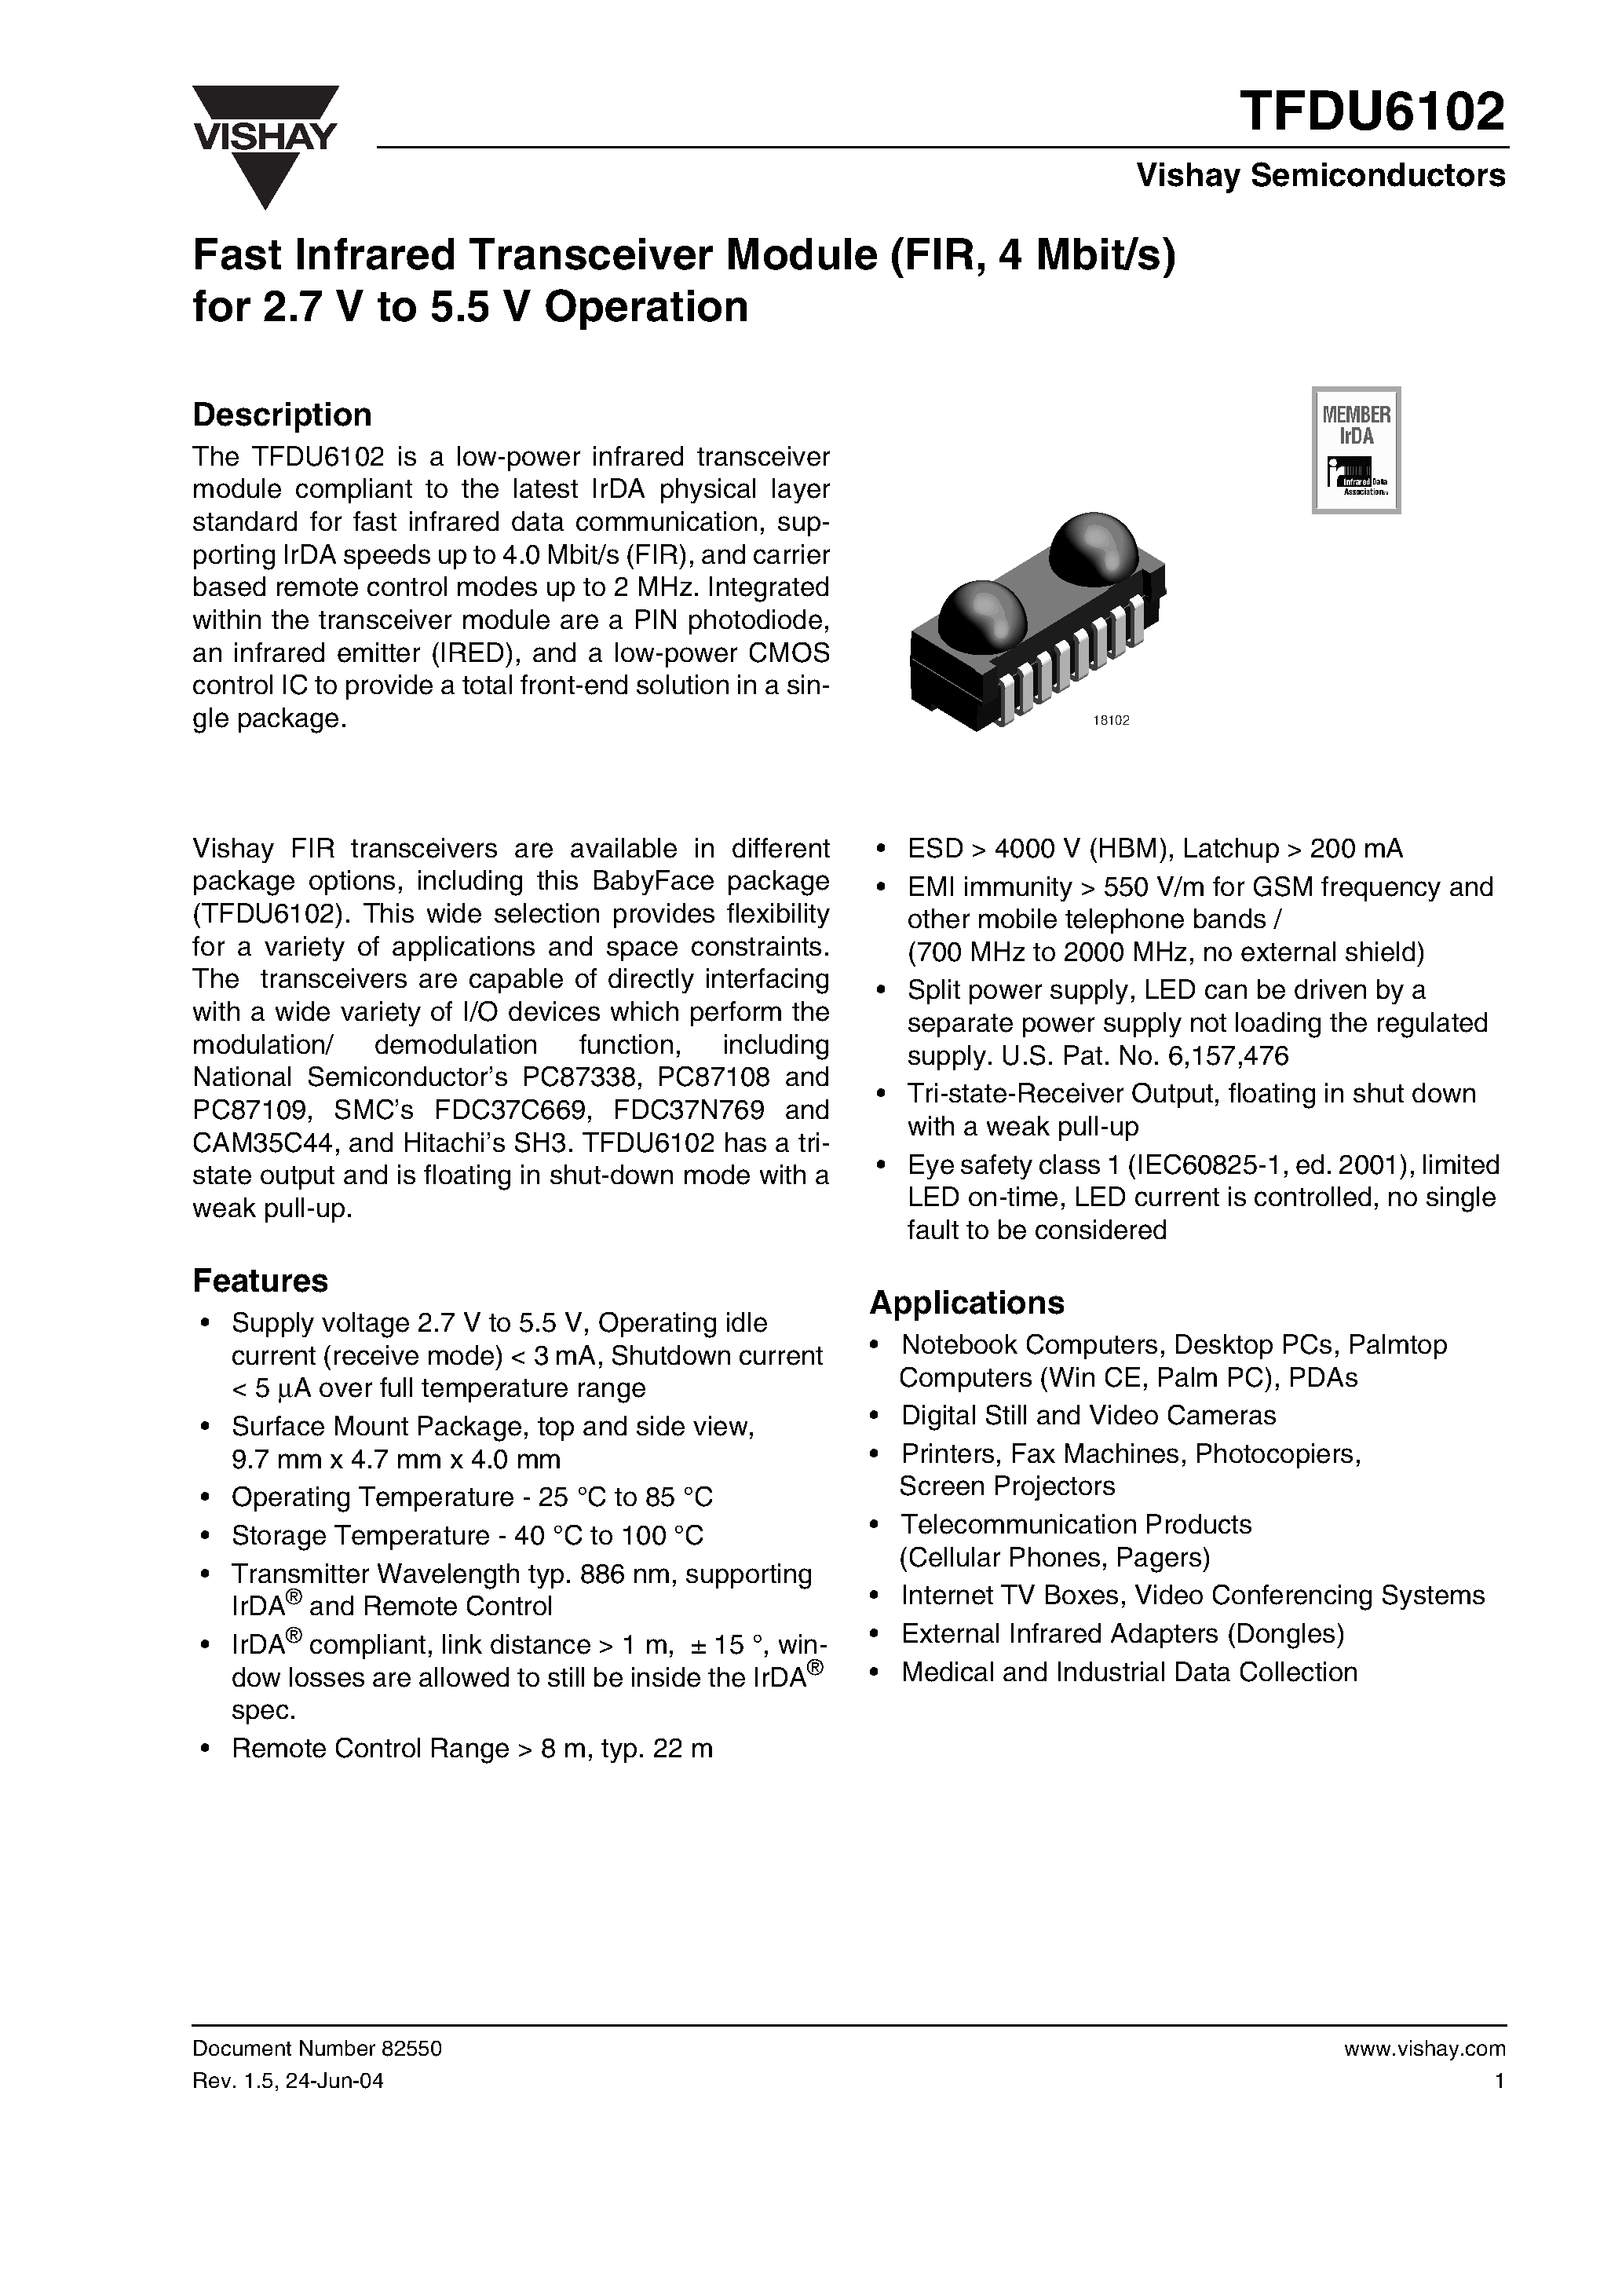 Даташит TFDU6102 - Fast Infrared Transceiver Module (FIR/ 4 Mbit/s) for 2.7 V to 5.5 V Operation страница 1